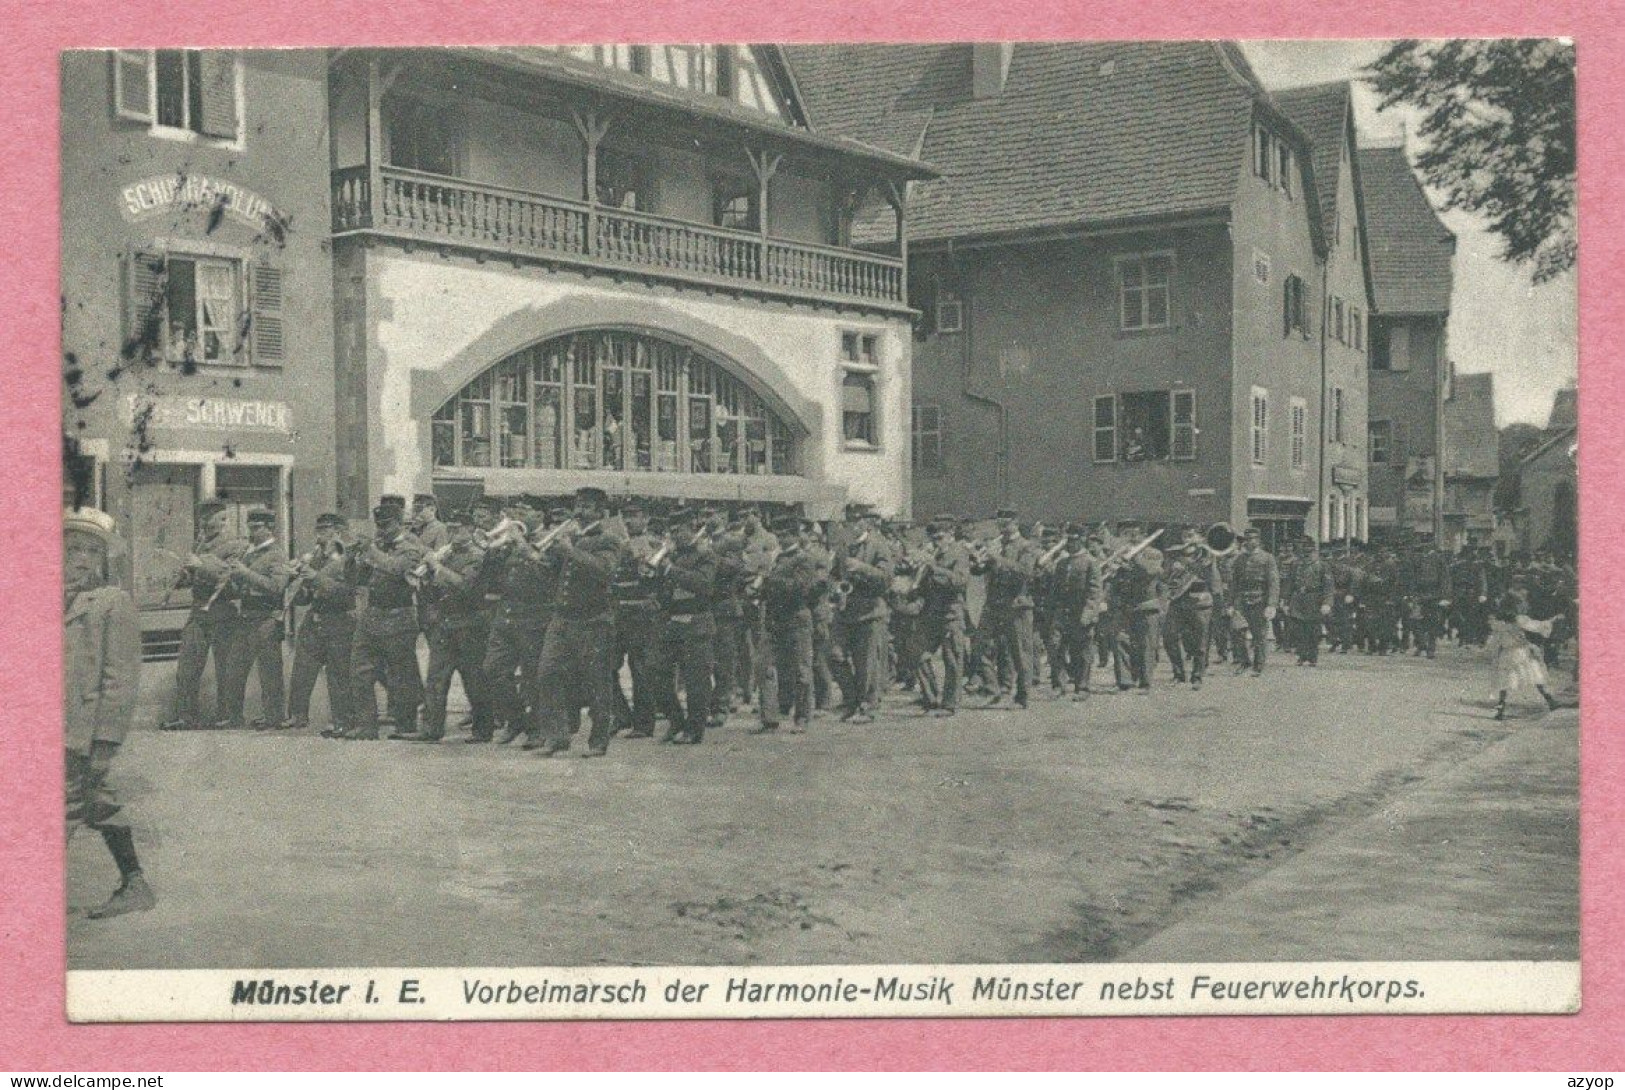 68 - MUNSTER - Vorbeimarsch Der Harmonie-Musik Münster Nebst Feuerwehrkorps - Pompiers - Munster